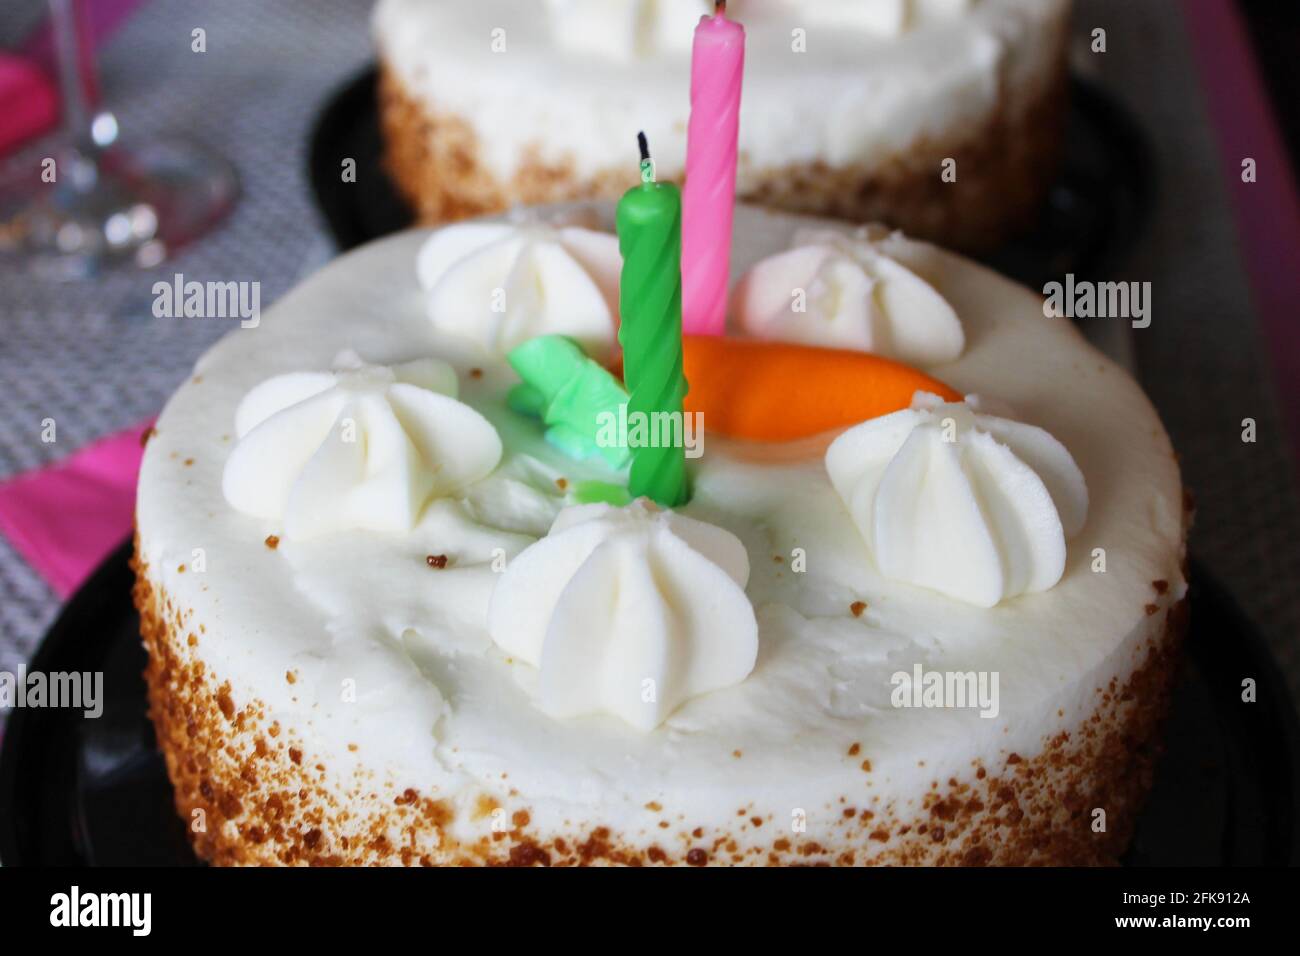 Nahaufnahme einer Karottenkuchen-Geburtstagstorte mit zwei Kerzen und einer orangefarbenen Puderkarotte darauf. Stockfoto